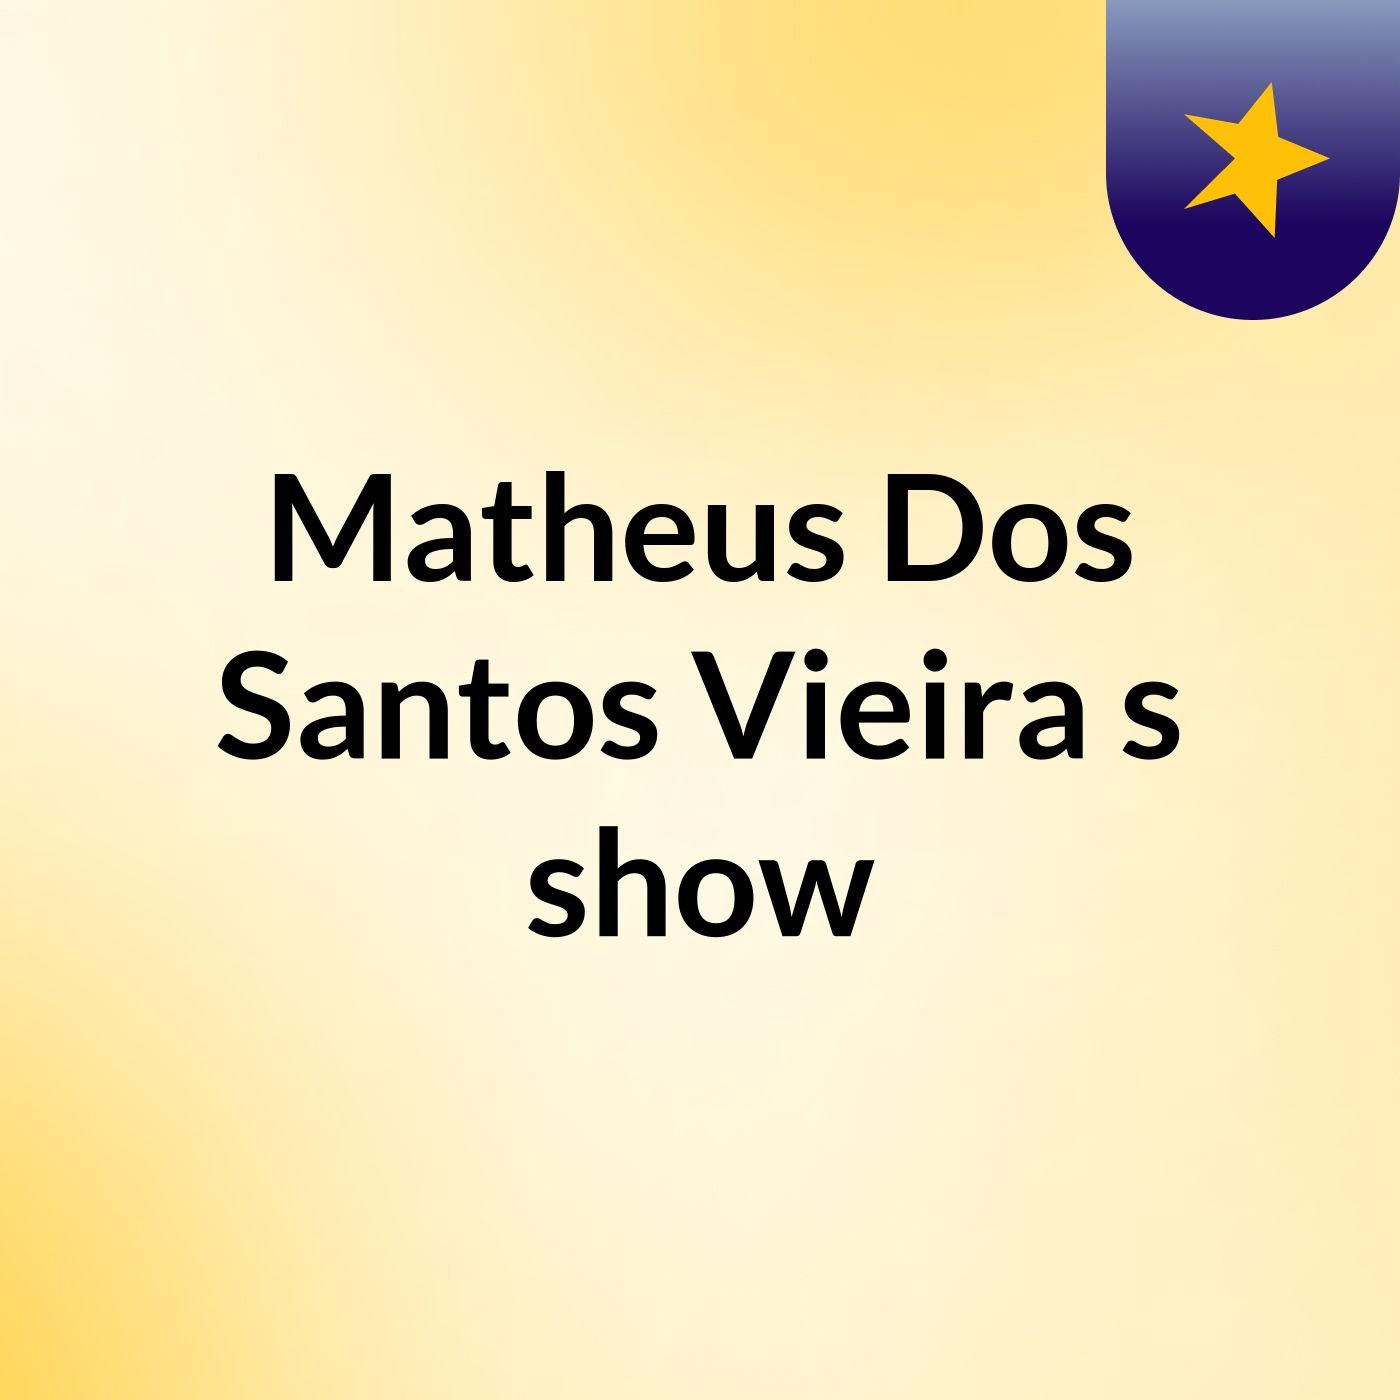 Matheus Dos Santos Vieira's show